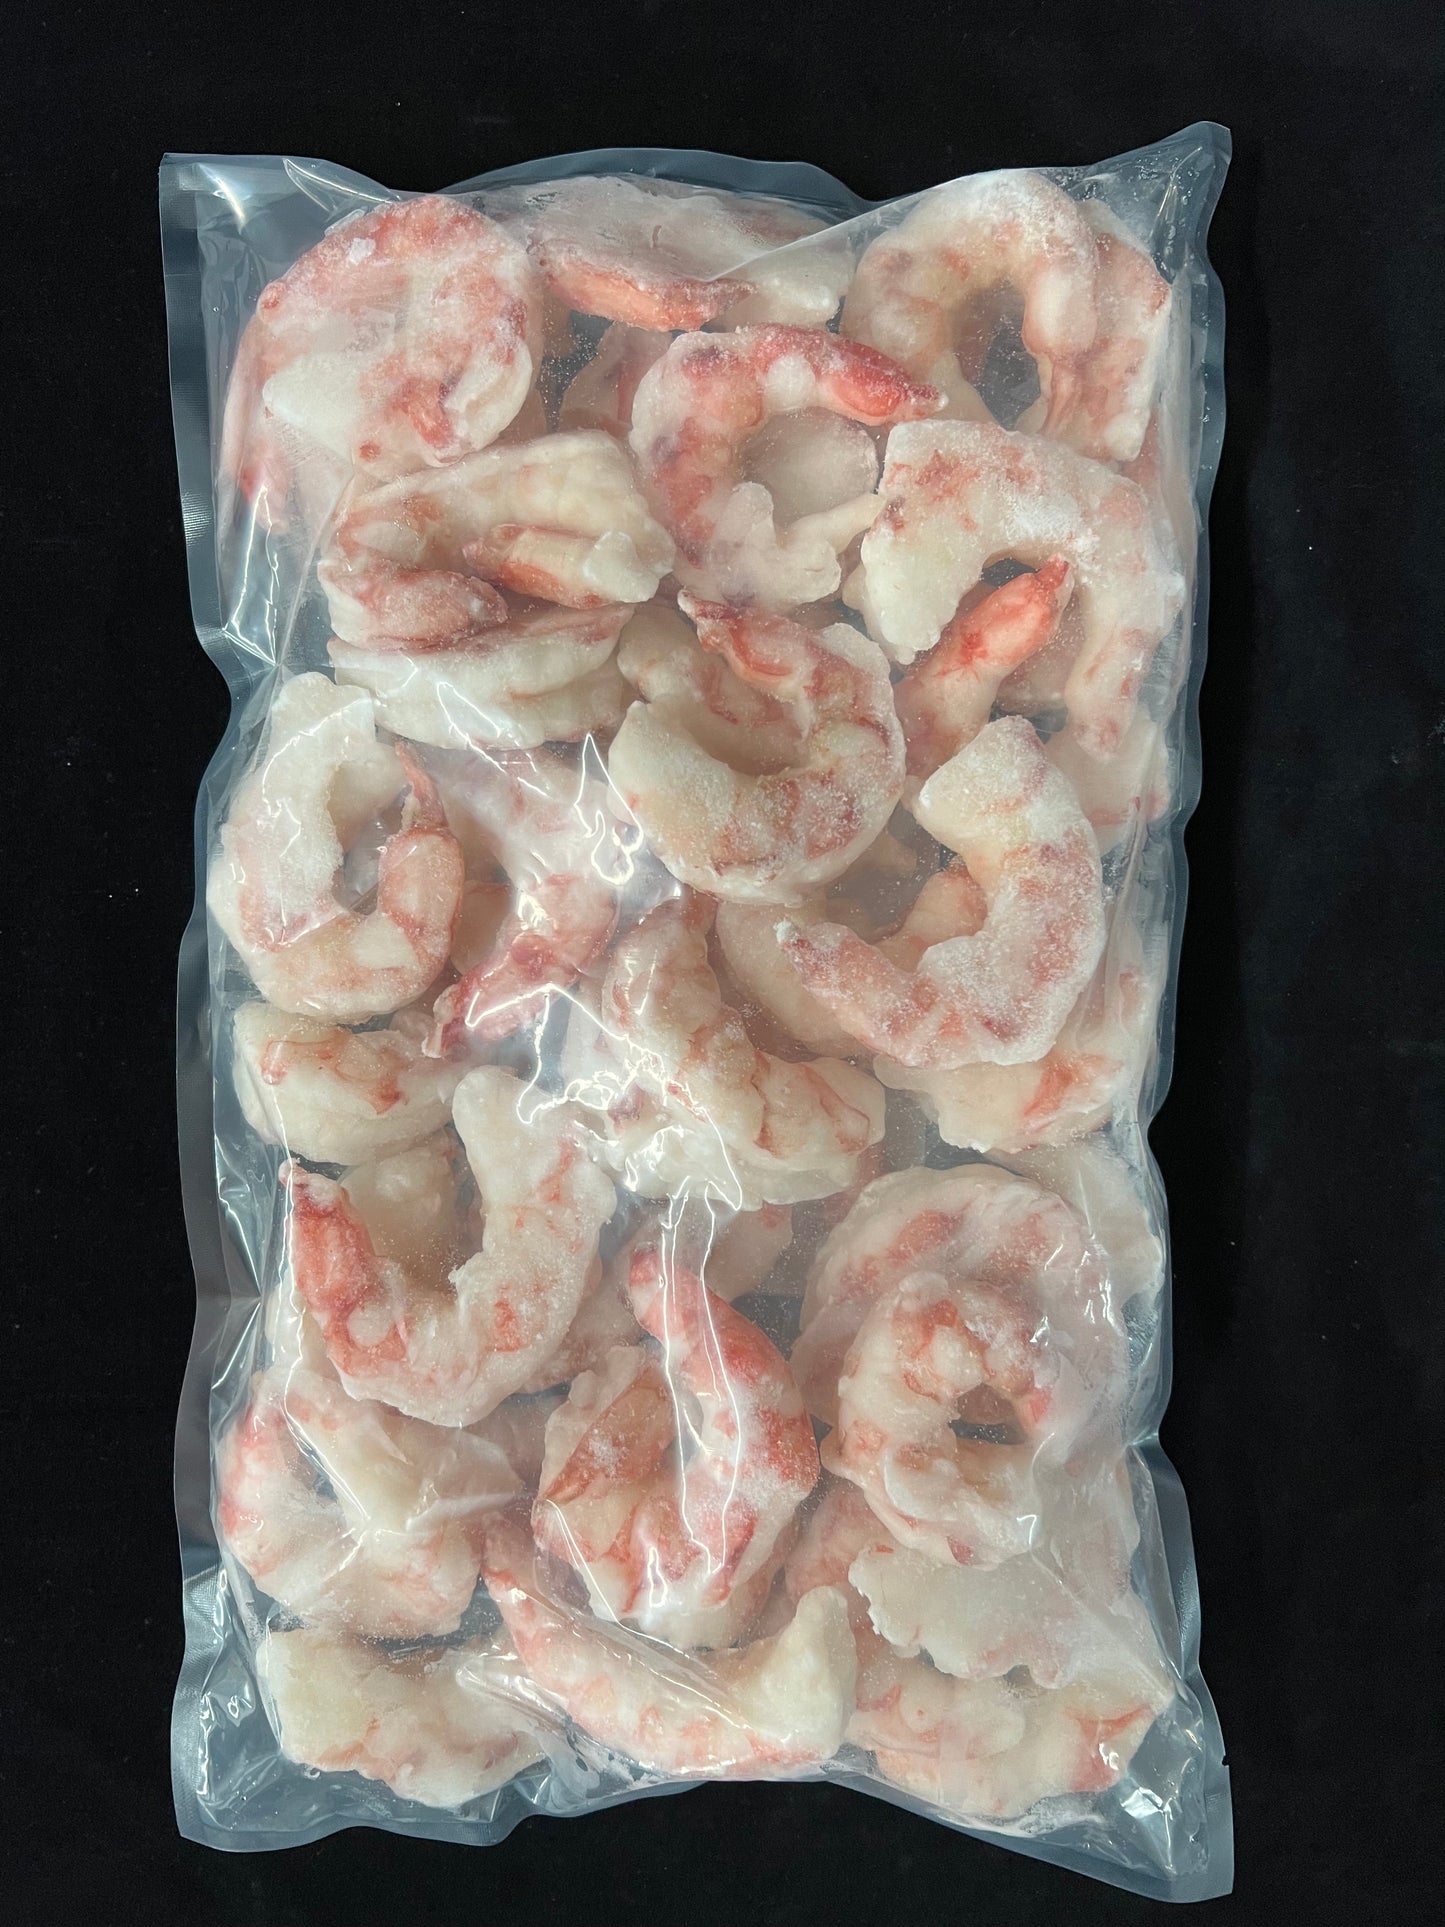 Argentina Pink Shrimps (16/20)/ Argentina Pink Shrimps (16/20) - 1362 g